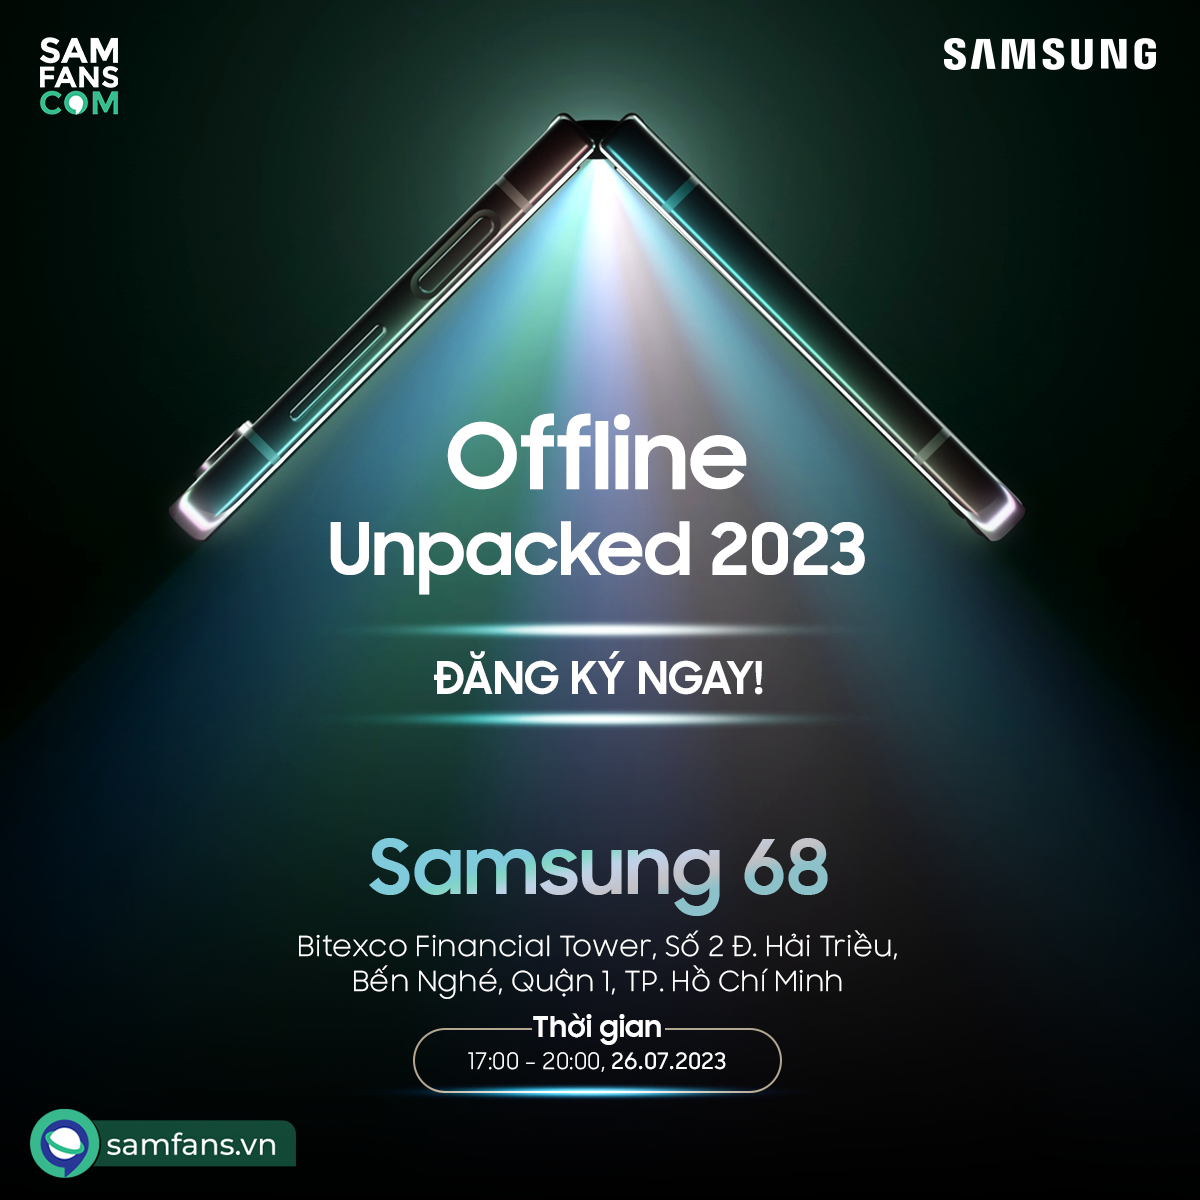 Đăng ký tham dự Offline Unpacked Galaxy Z Mới tại Hồ Chí Minh ngày 26/7 - 1689925798